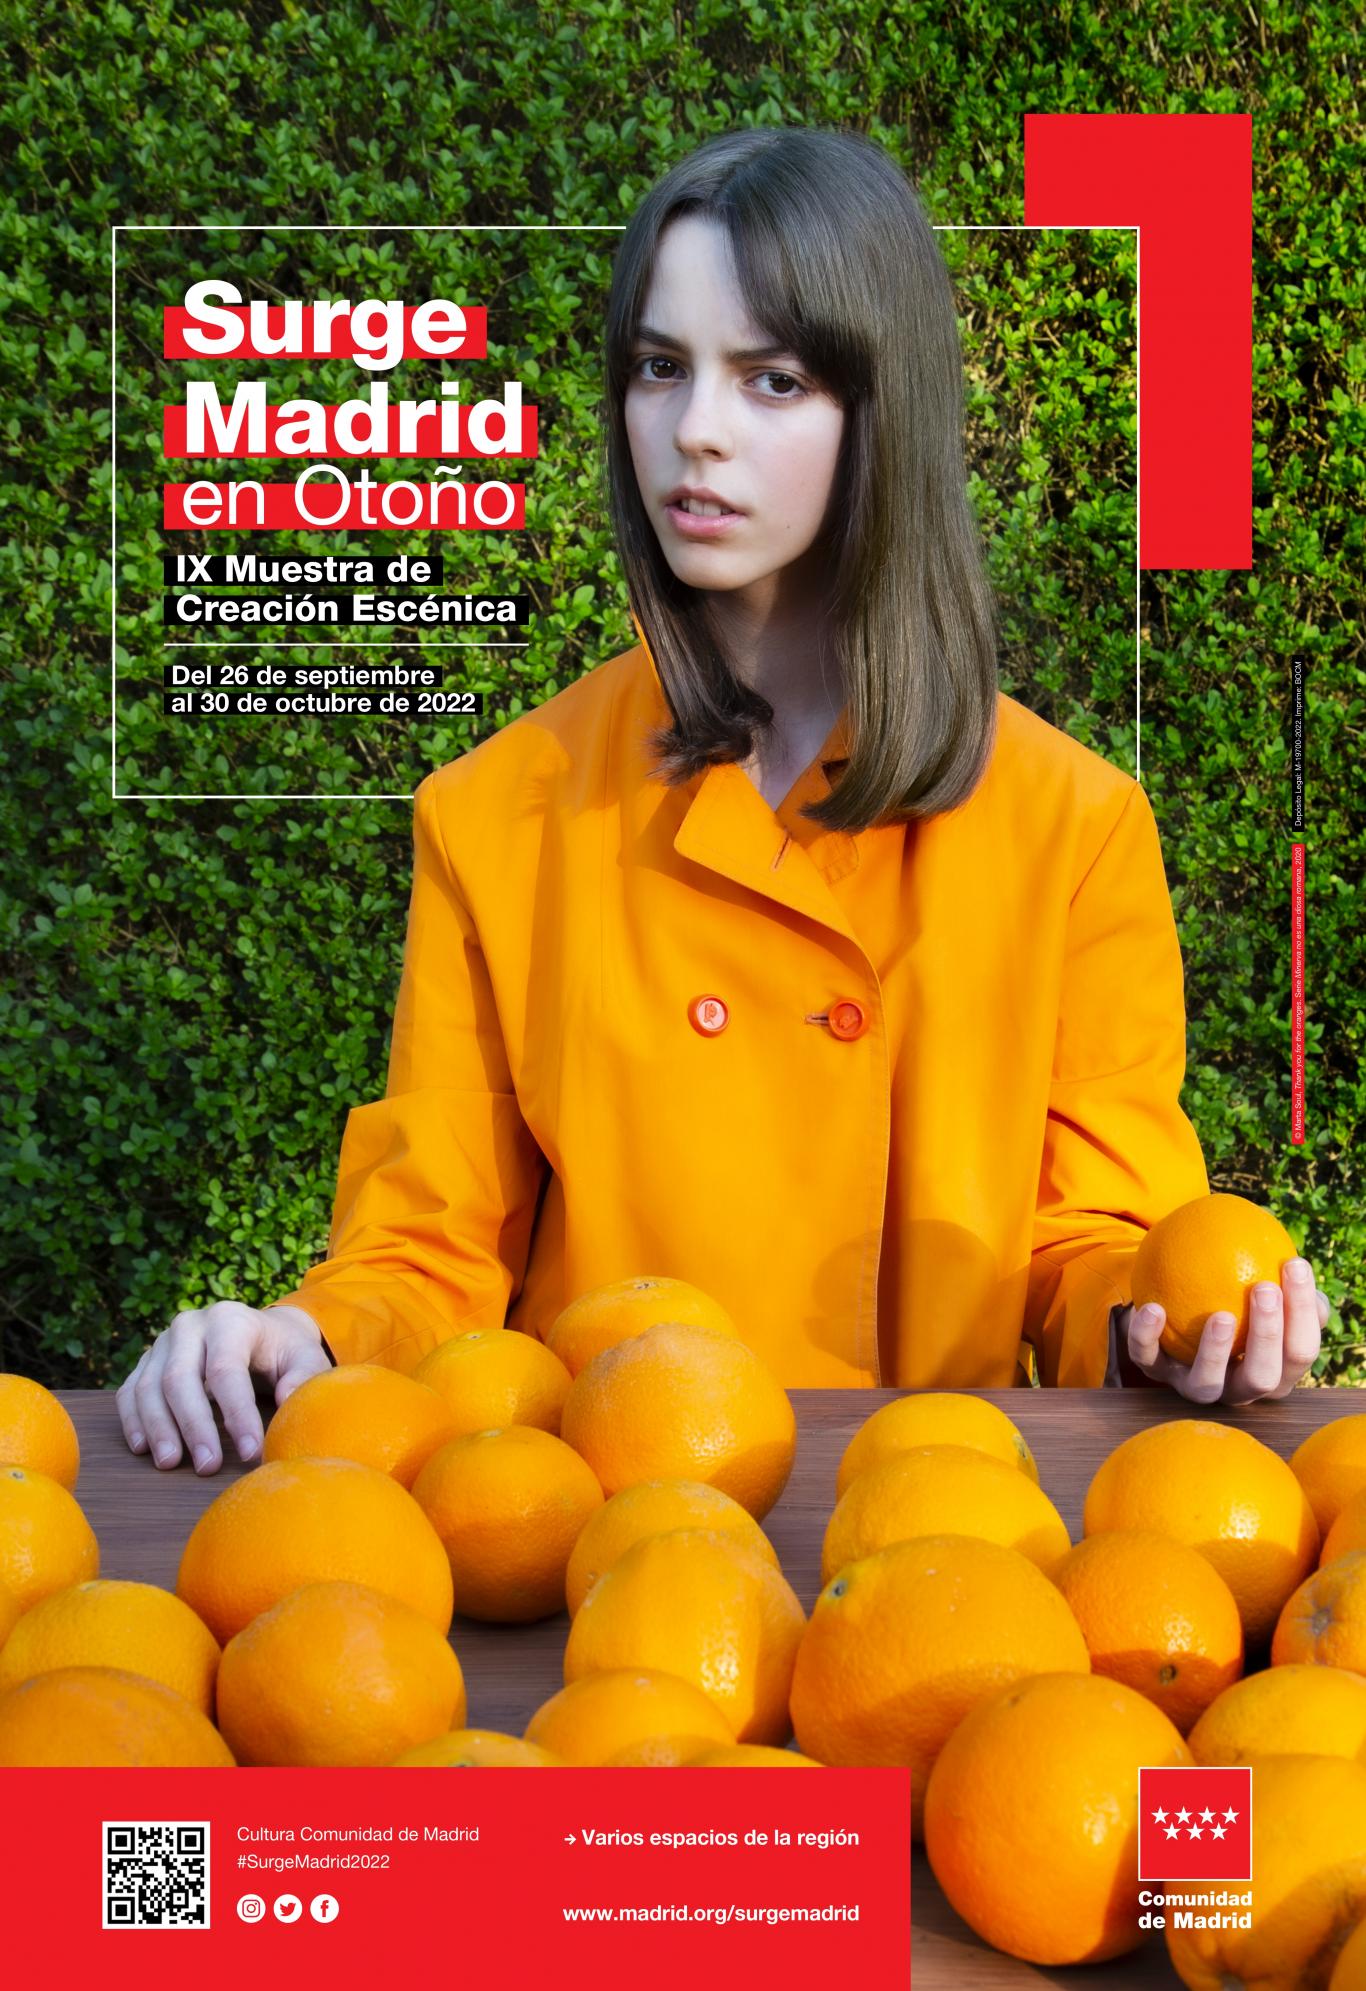 Mujer con chaqueta naranja y muchas naranjas en su regazo